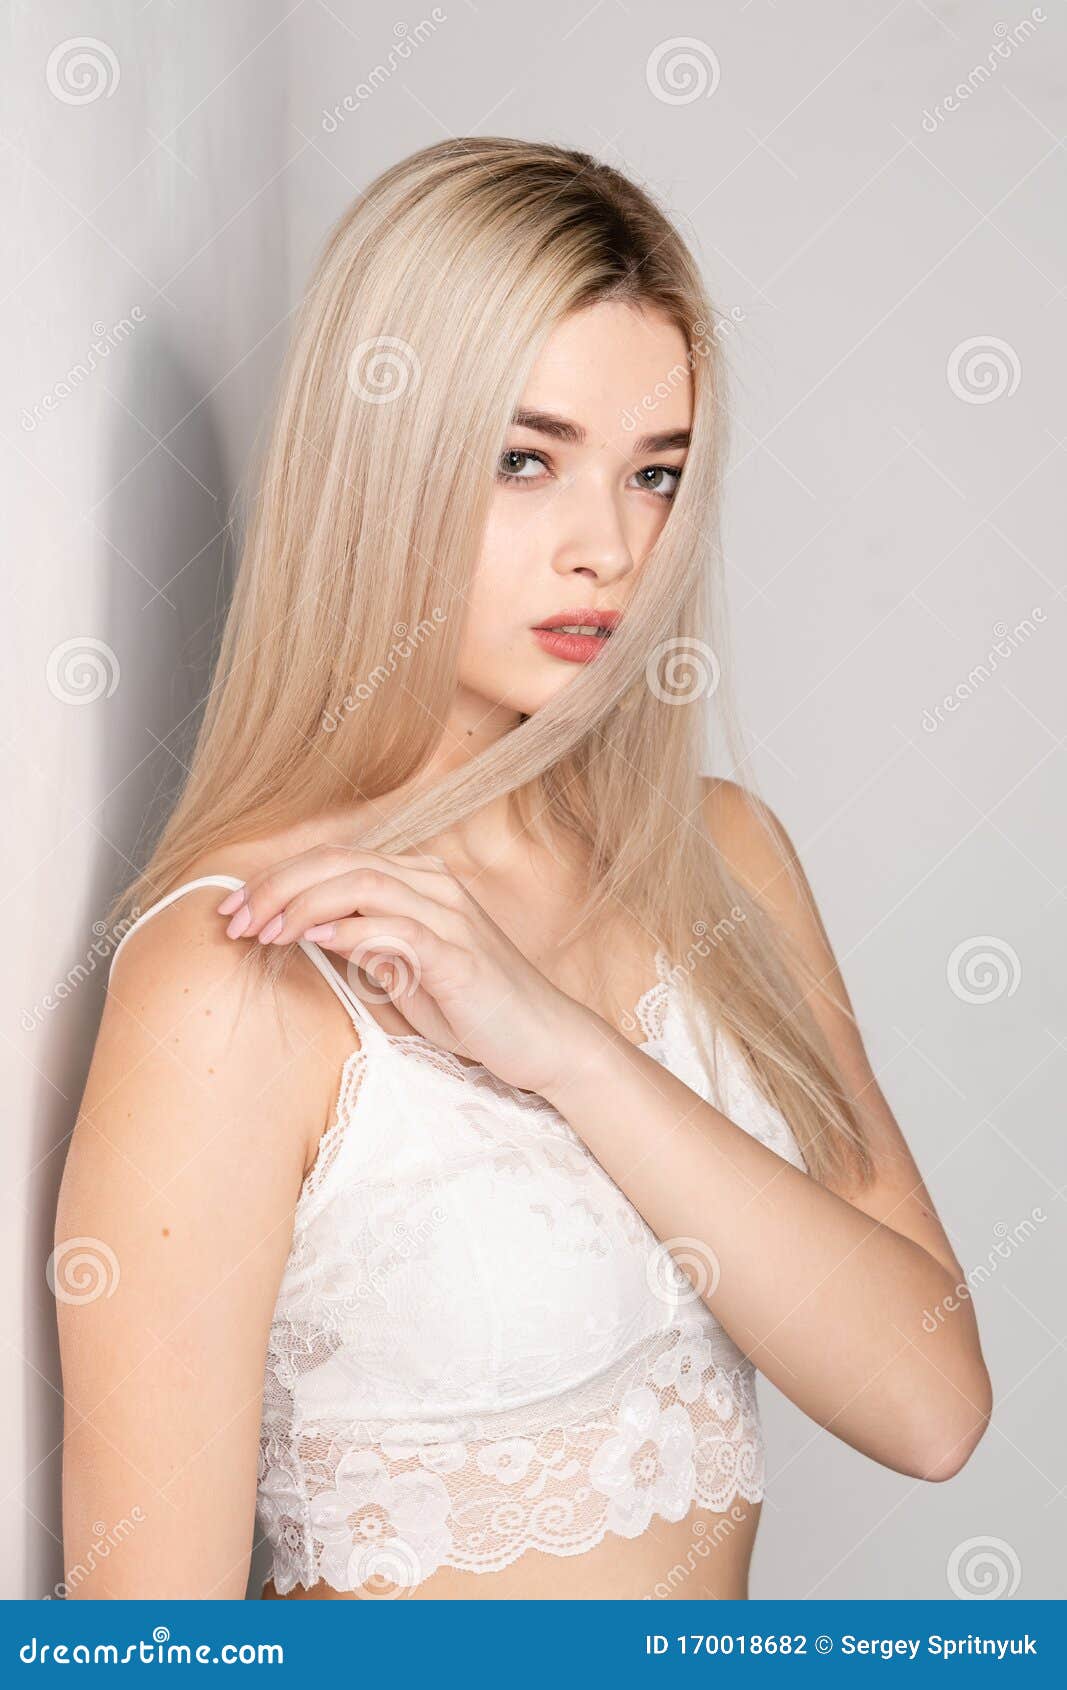 Posing blonde girl